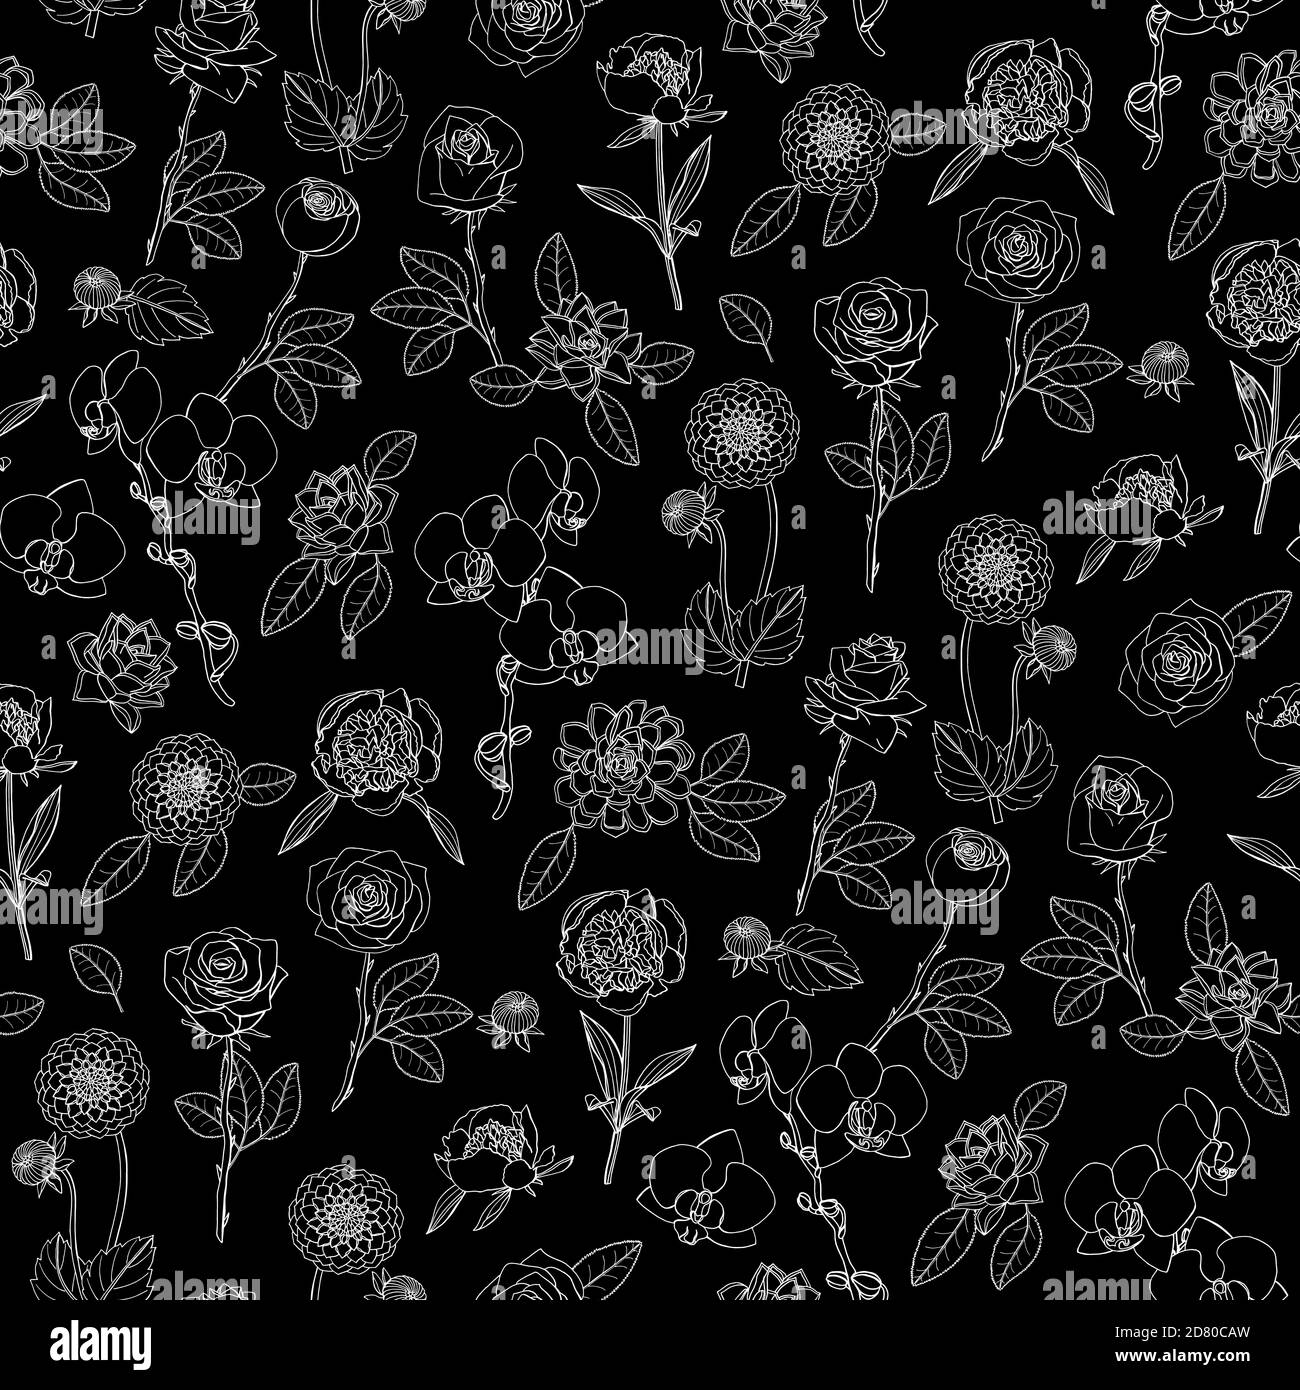 Monochromes Nahtloses Blumenmuster mit handgezeichneten Blumen auf schwarzem Hintergrund. Stock-Vektor Stock Vektor